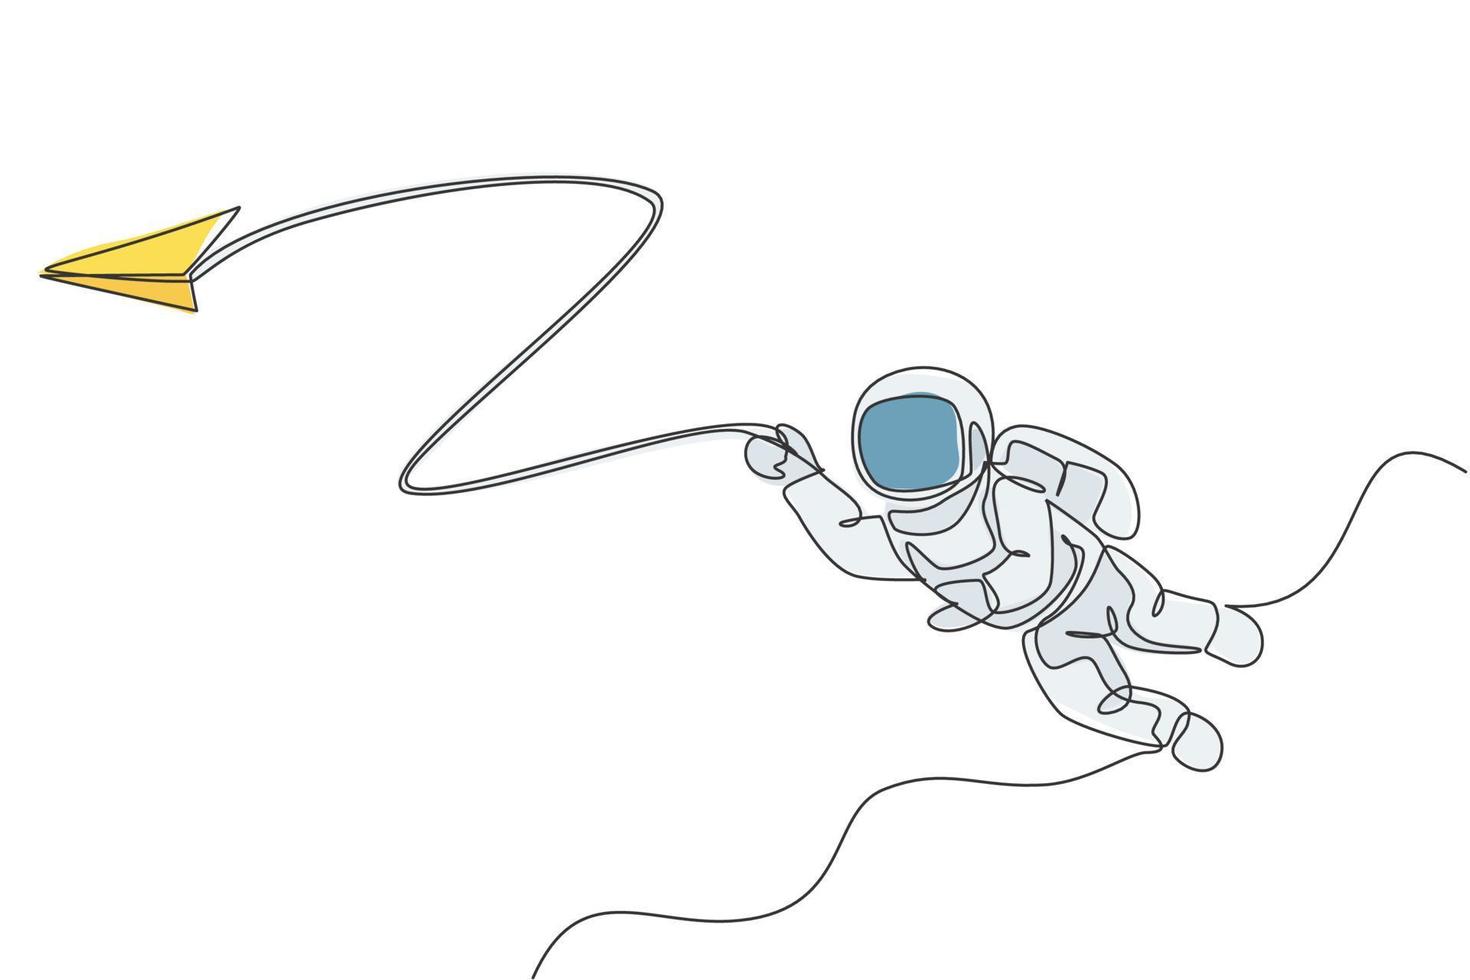 Un astronauta de hombre espacial de dibujo de una sola línea explorando la galaxia cósmica, jugando con la ilustración de vector gráfico de avión de papel. concepto de ficción de vida de espacio exterior de fantasía. diseño moderno de dibujo de línea continua